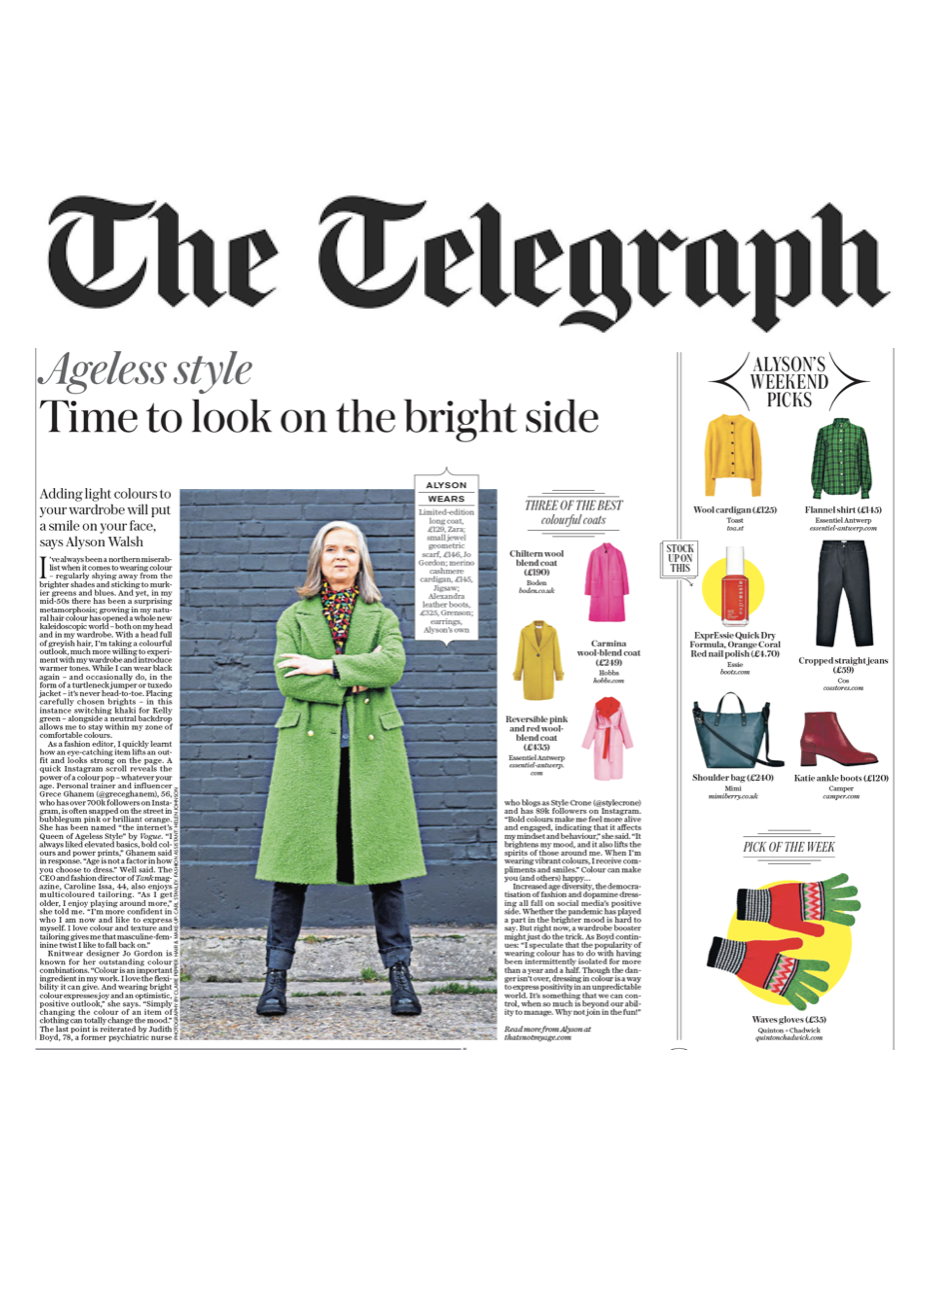 The Saturday Telegraph Nov 21